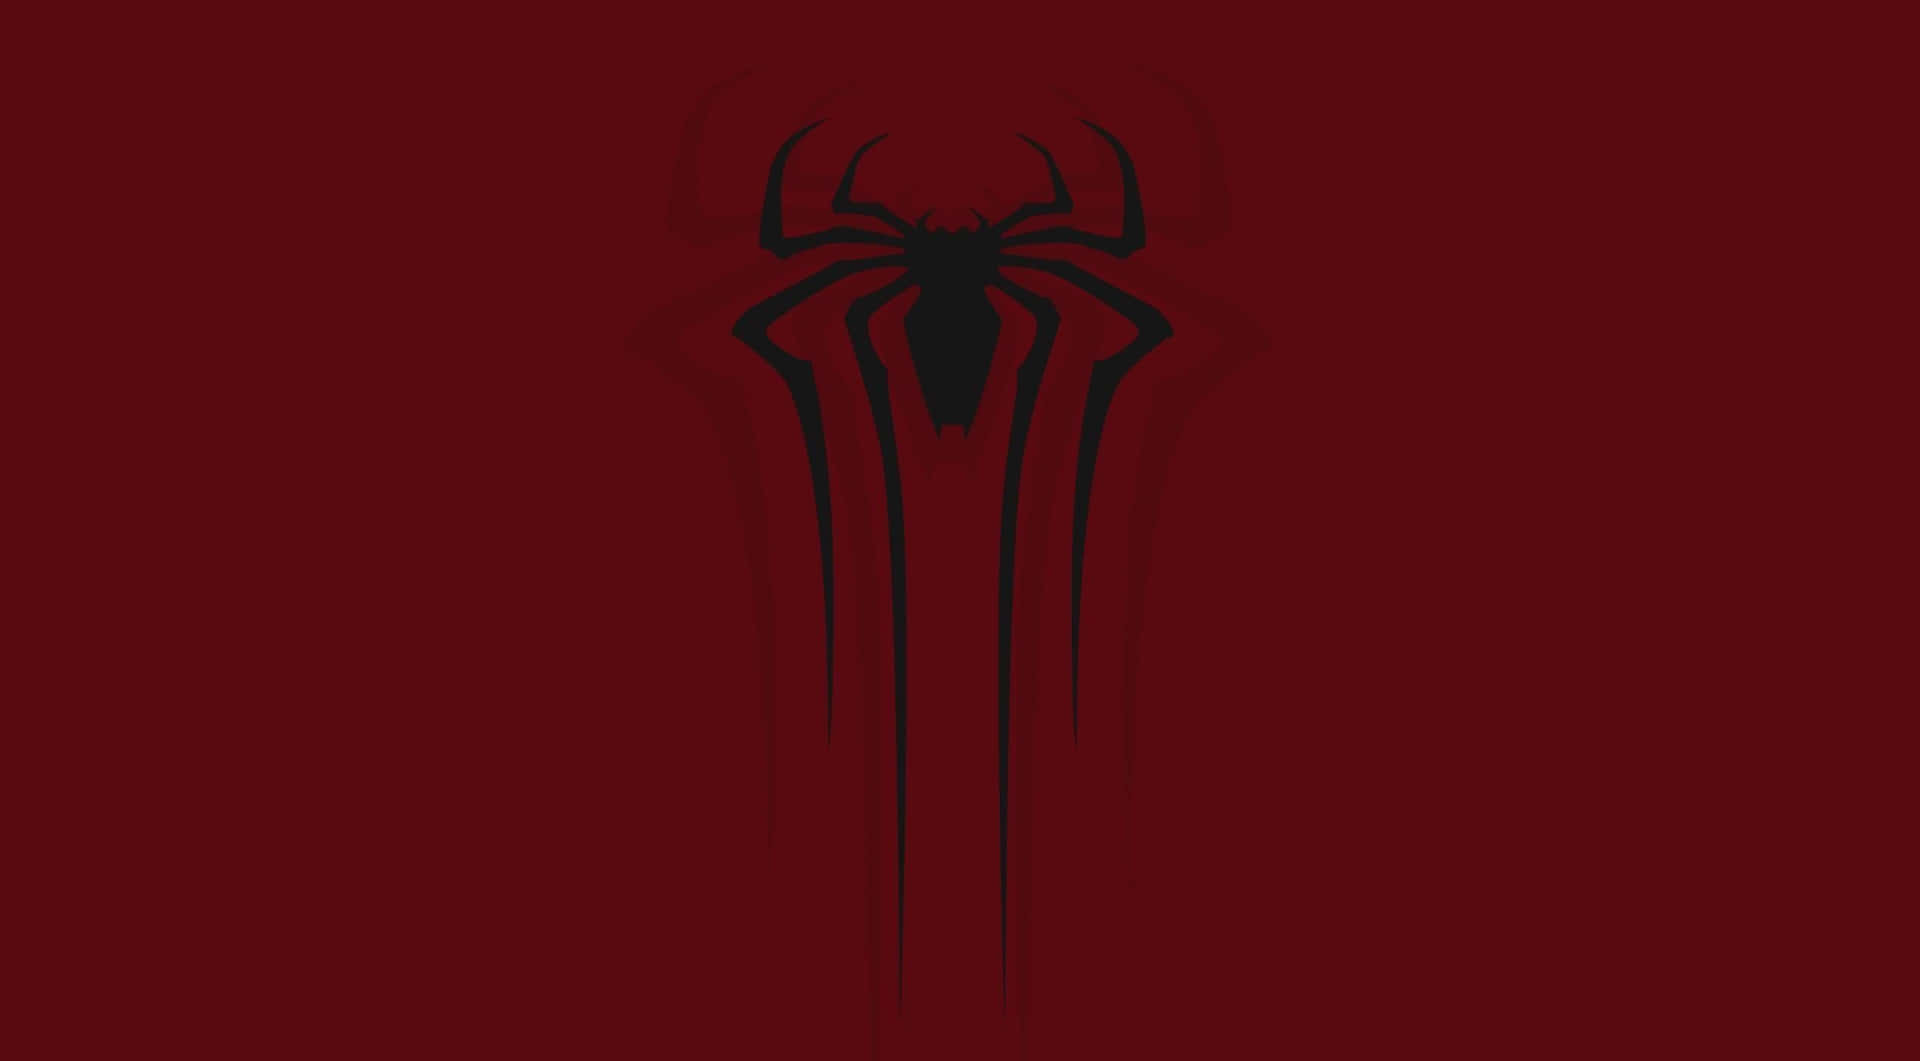 Dasspider-man-logo Auf Einem Roten Hintergrund Wallpaper